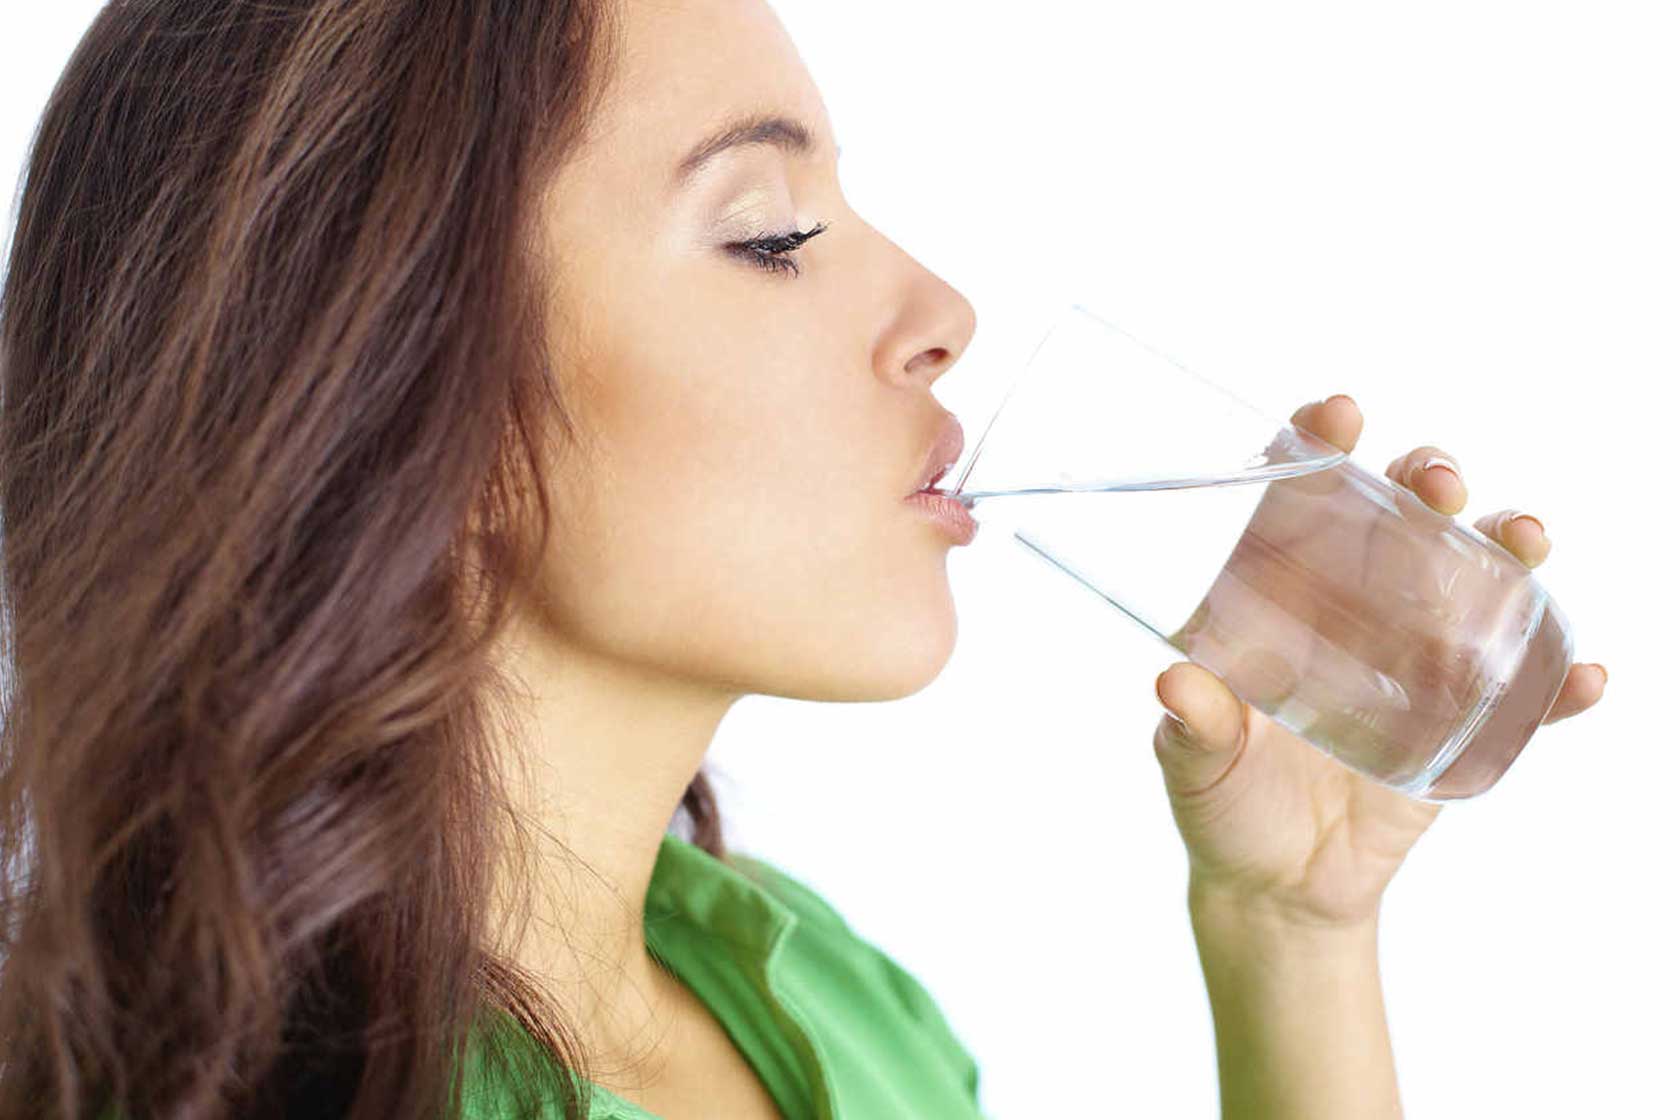 Kvinne drikker vann